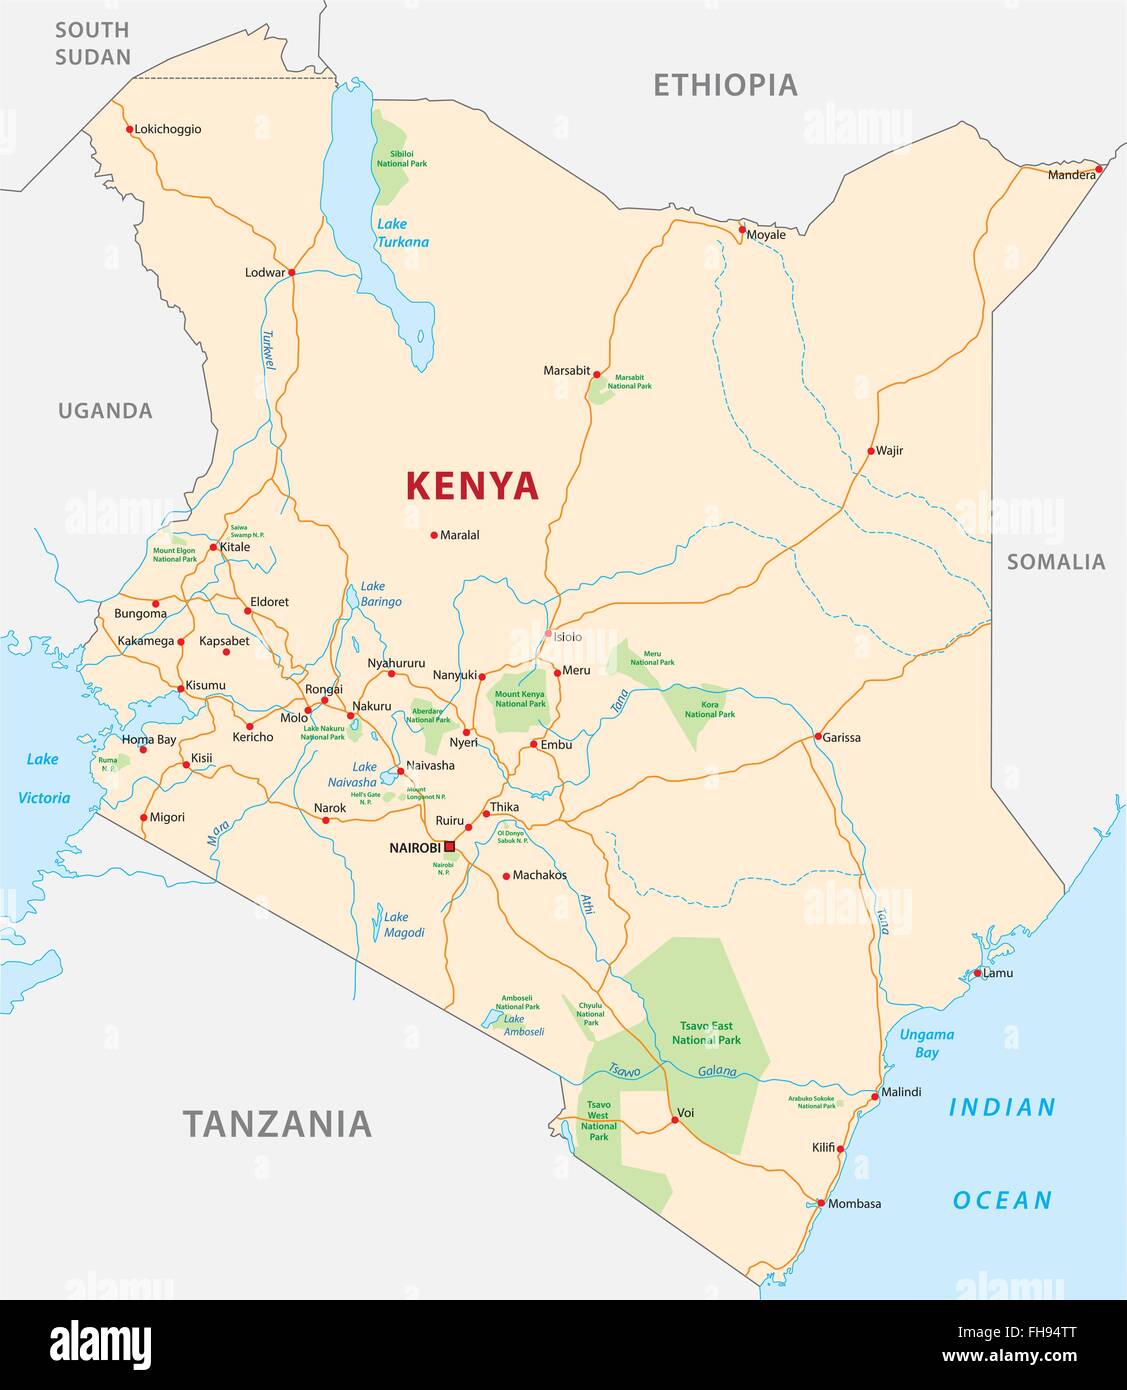 Kenya road and National Park map Stock Vector